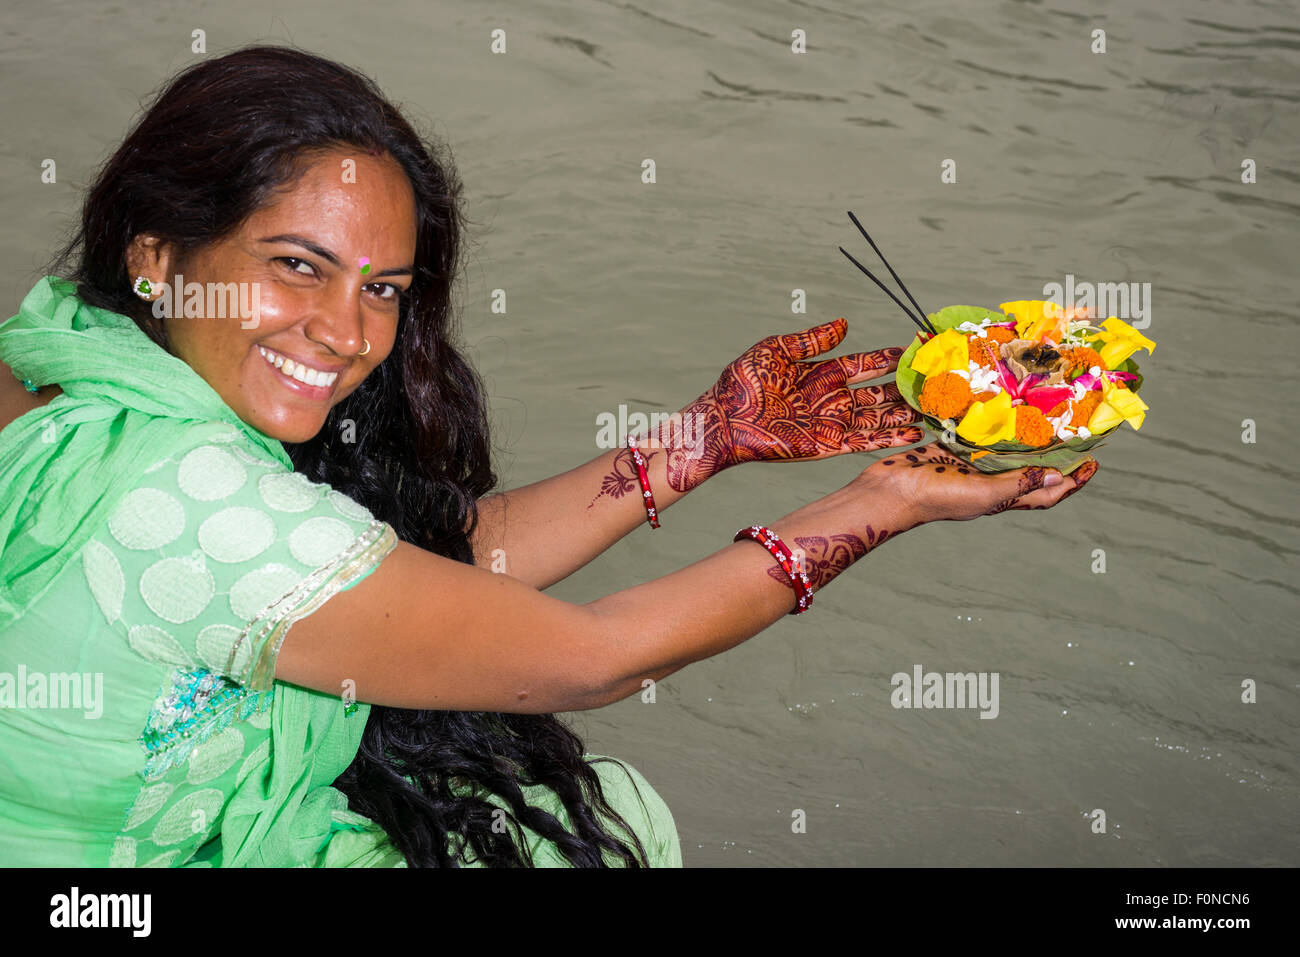 Eine junge Frau mit langen schwarzen Haaren, Henna bemalte Hände und ein grünes Kleid hält eine Deepak, eine Blume anbieten, an den ghats Stockfoto